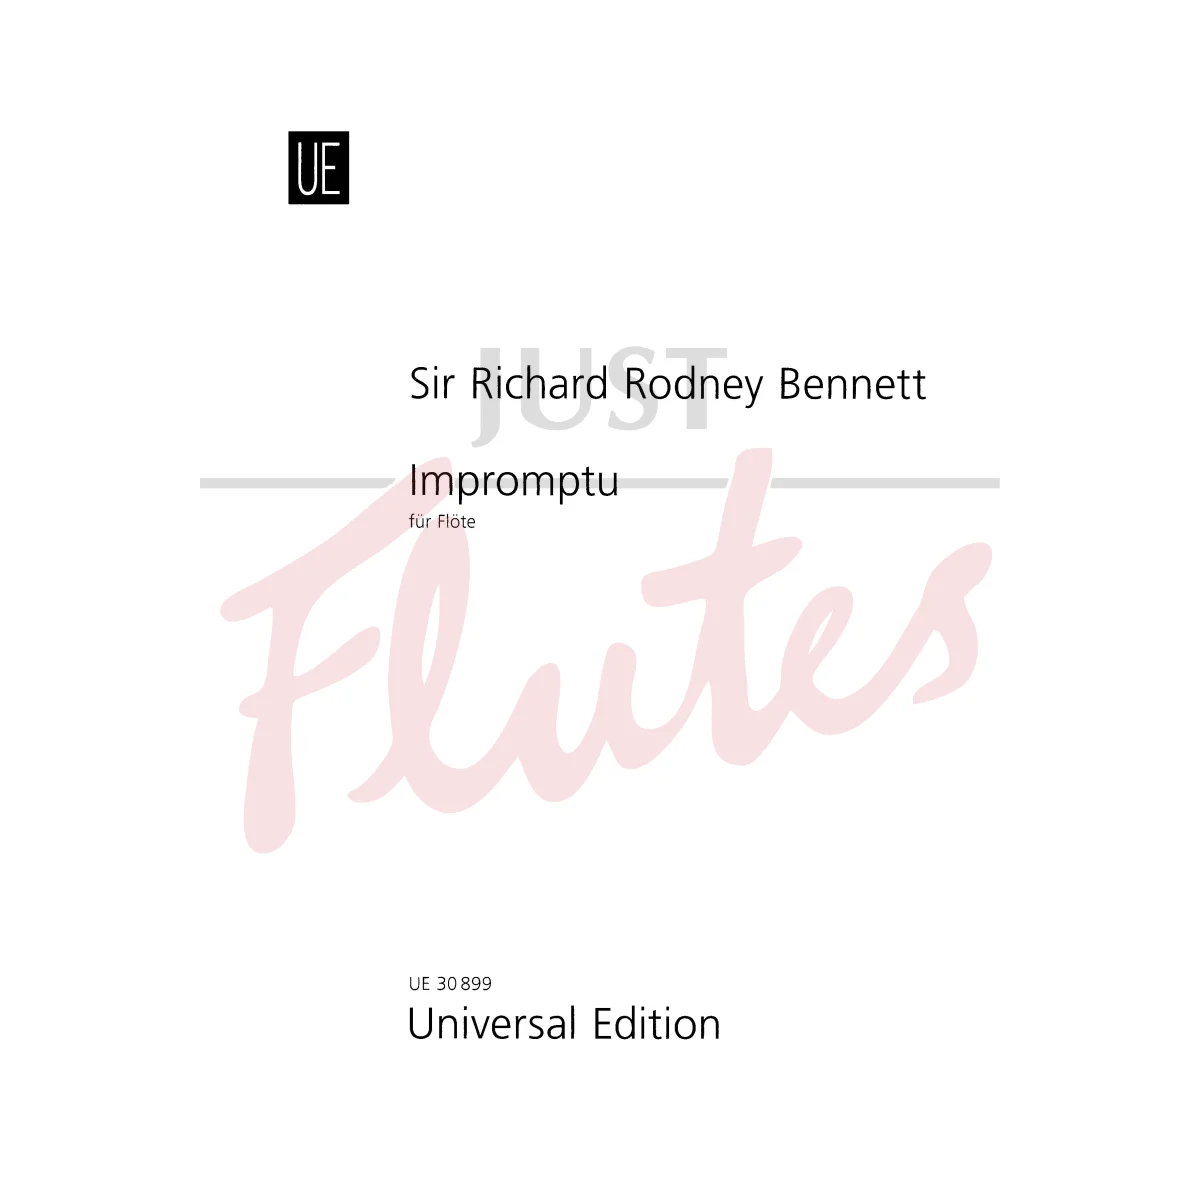 Impromptu for Flute (1969)